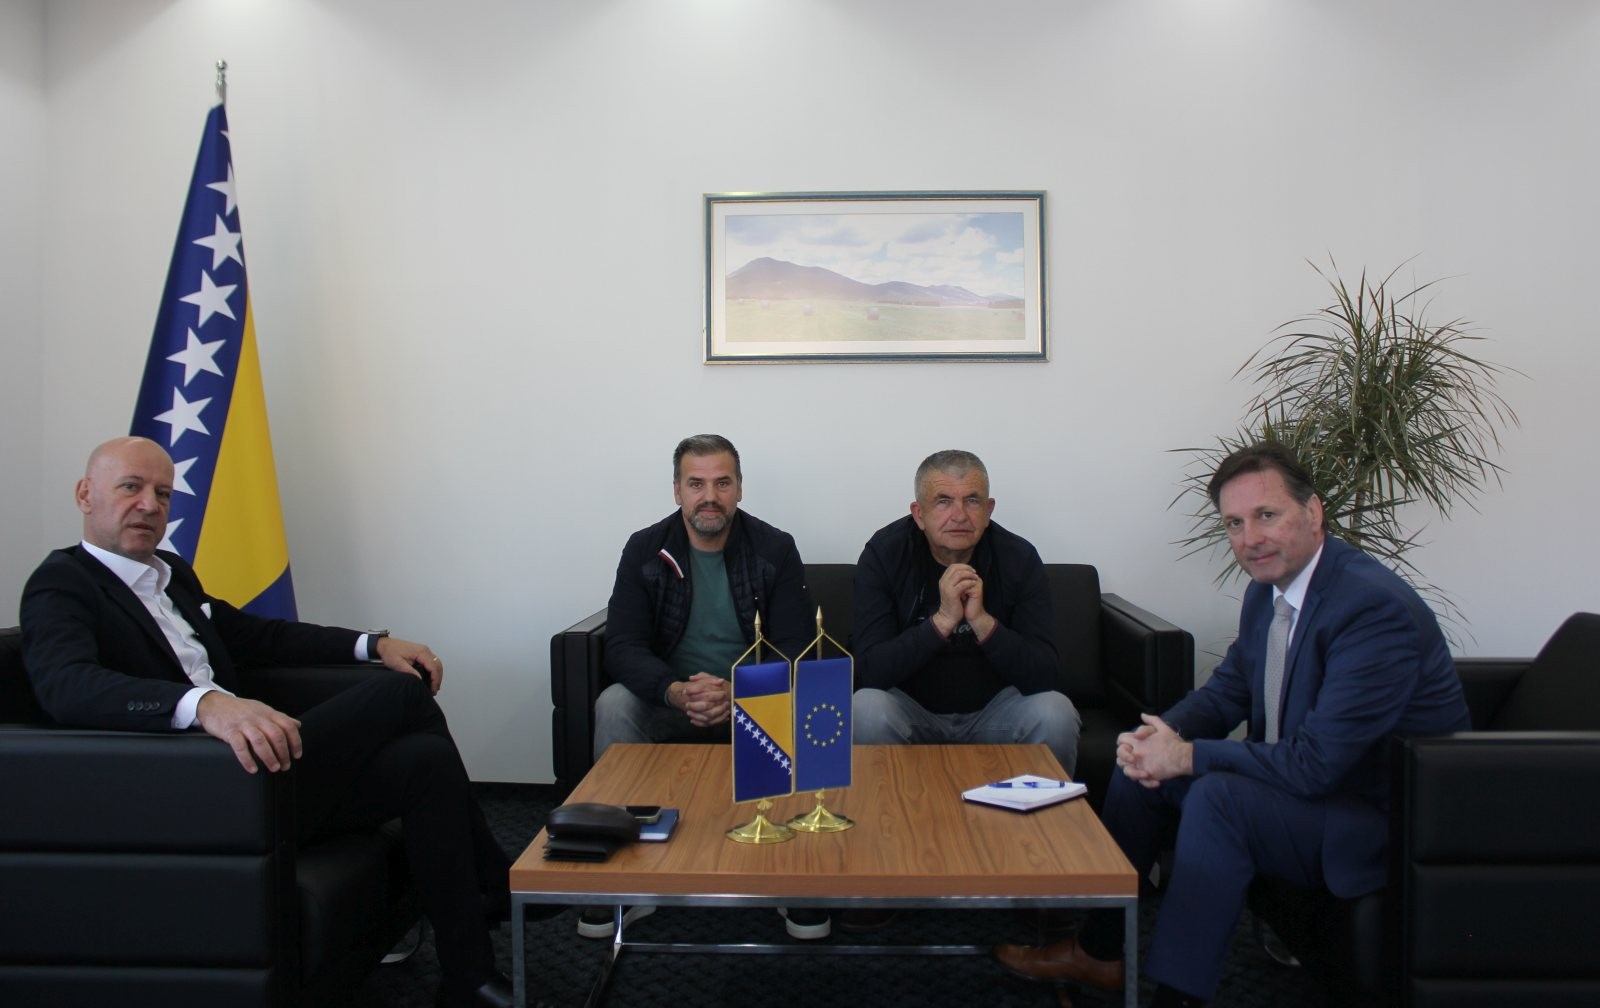 Ministar Hrnjić: Rasadničarska proizvodnja treba otvoriti put zadržavanju i proširenju postojećih radnih mjesta